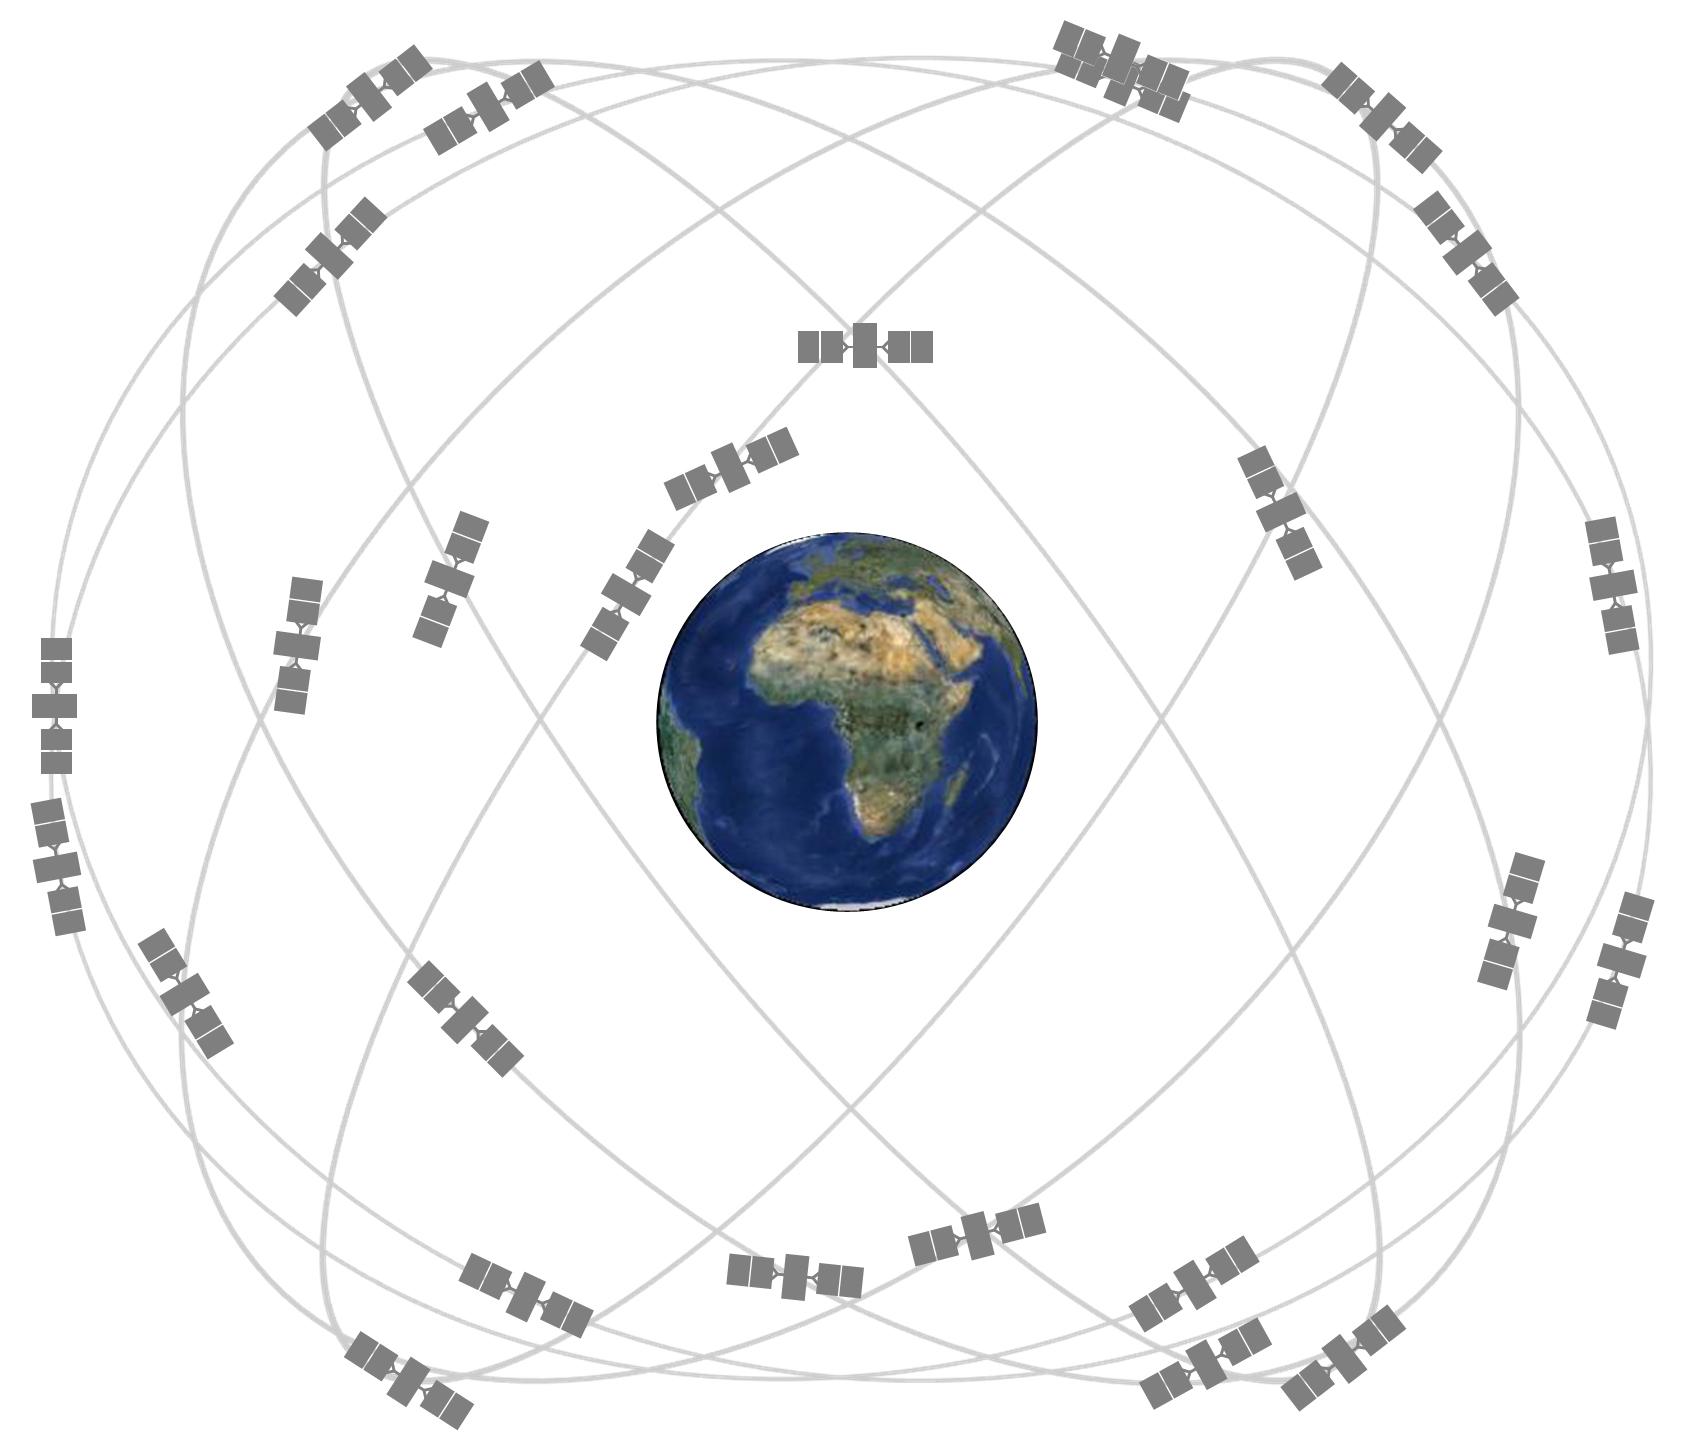 La constelación de satélites GPS garantiza su visibilidad. Imagen: Gobierno de Estados Unidos